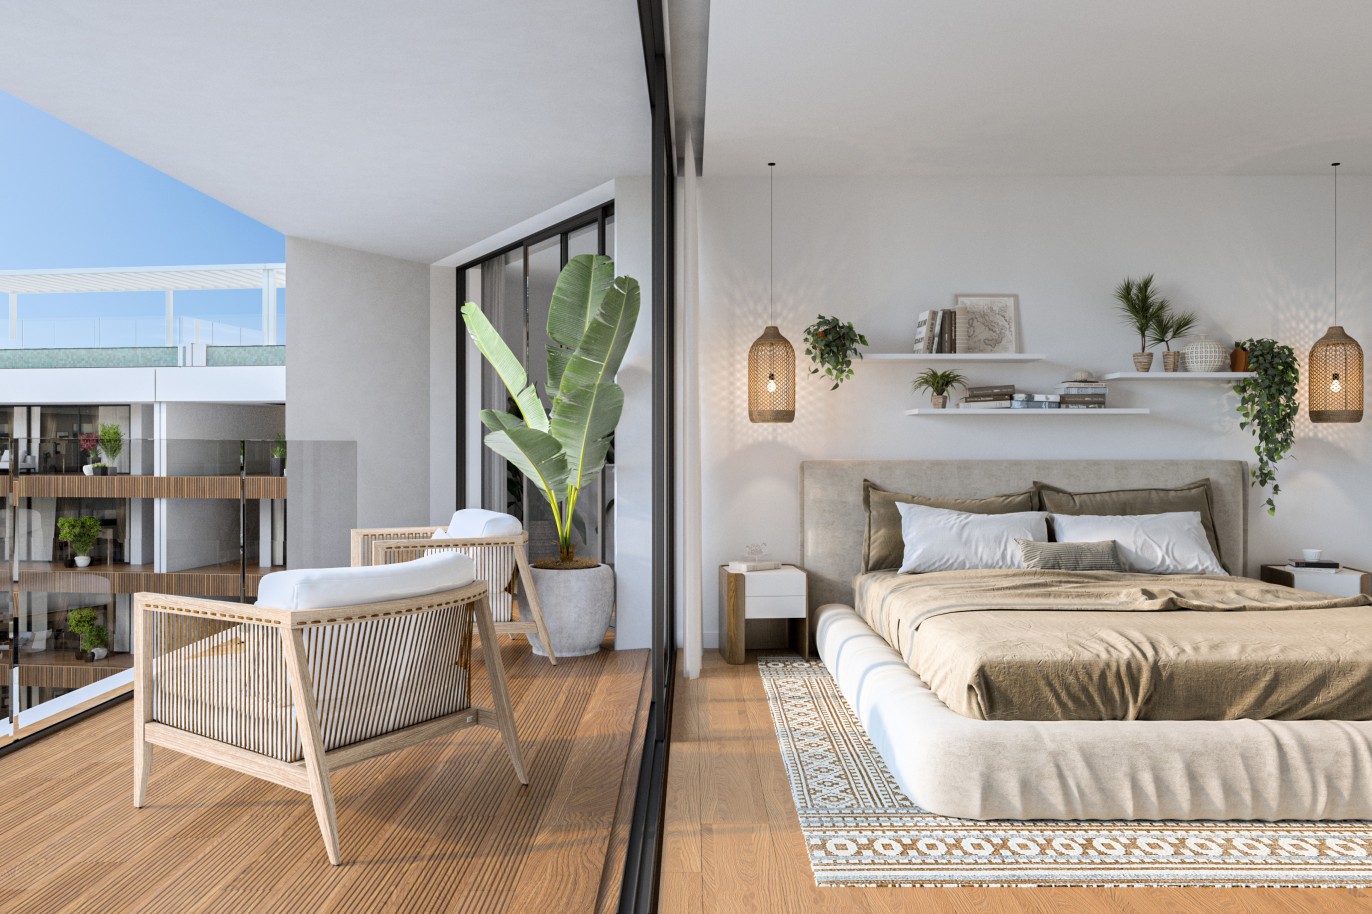 Appartements neufs avec vue sur mer, 1, 2 & 3 chambres, à vendre à Olhão, Algarve_244456